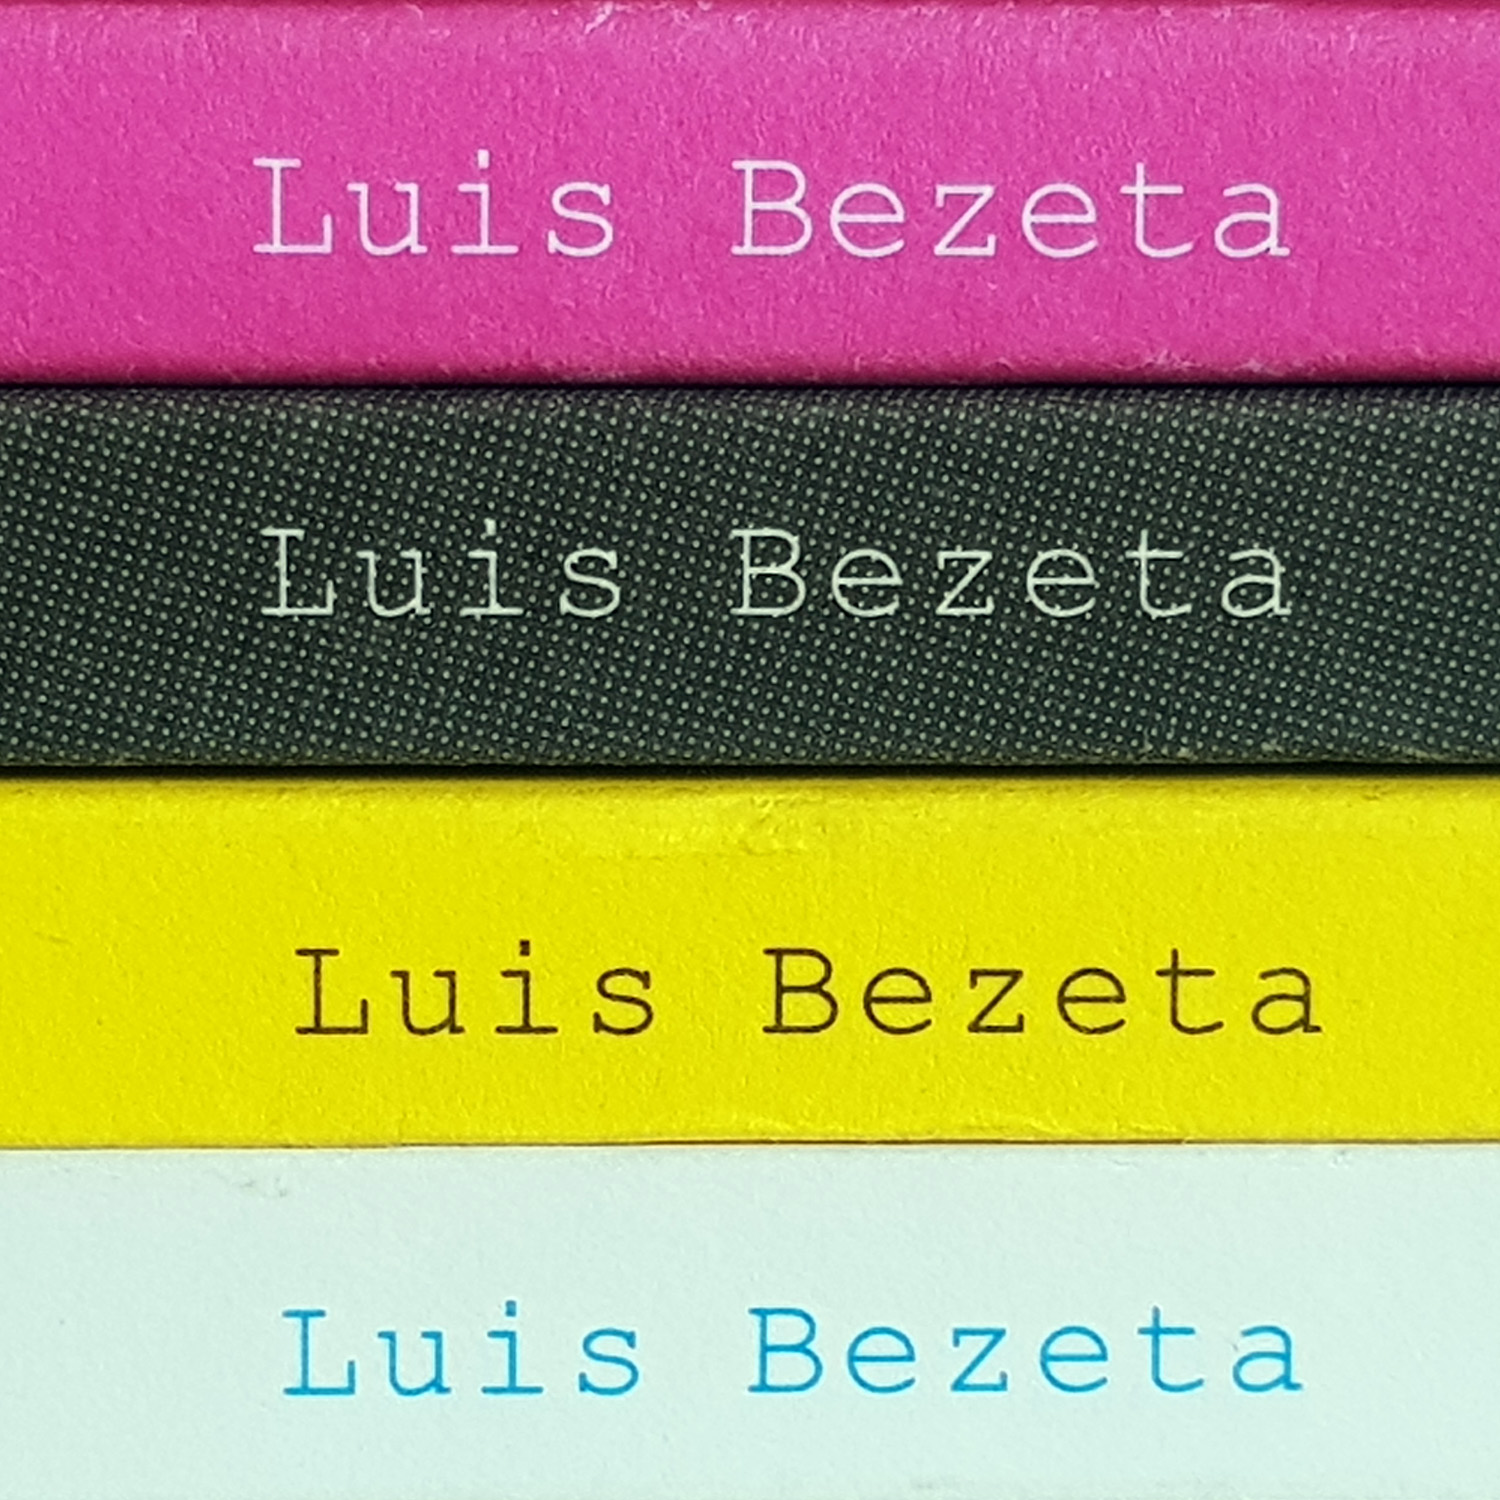 Luis bezeta - MKYC - libros (6)